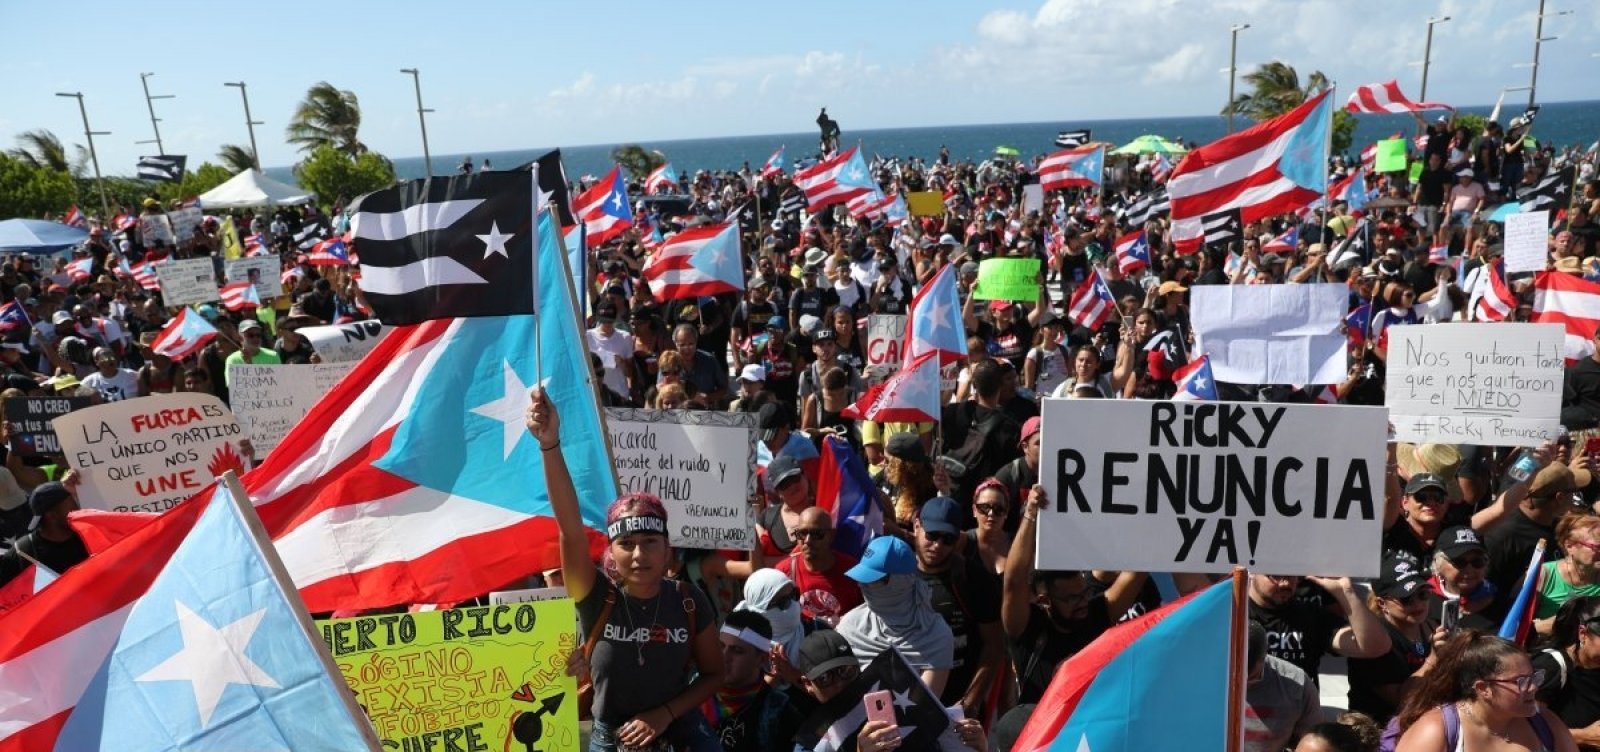 Quinto dia consecutivo de protesto em Porto Rico termina em confronto com polícia